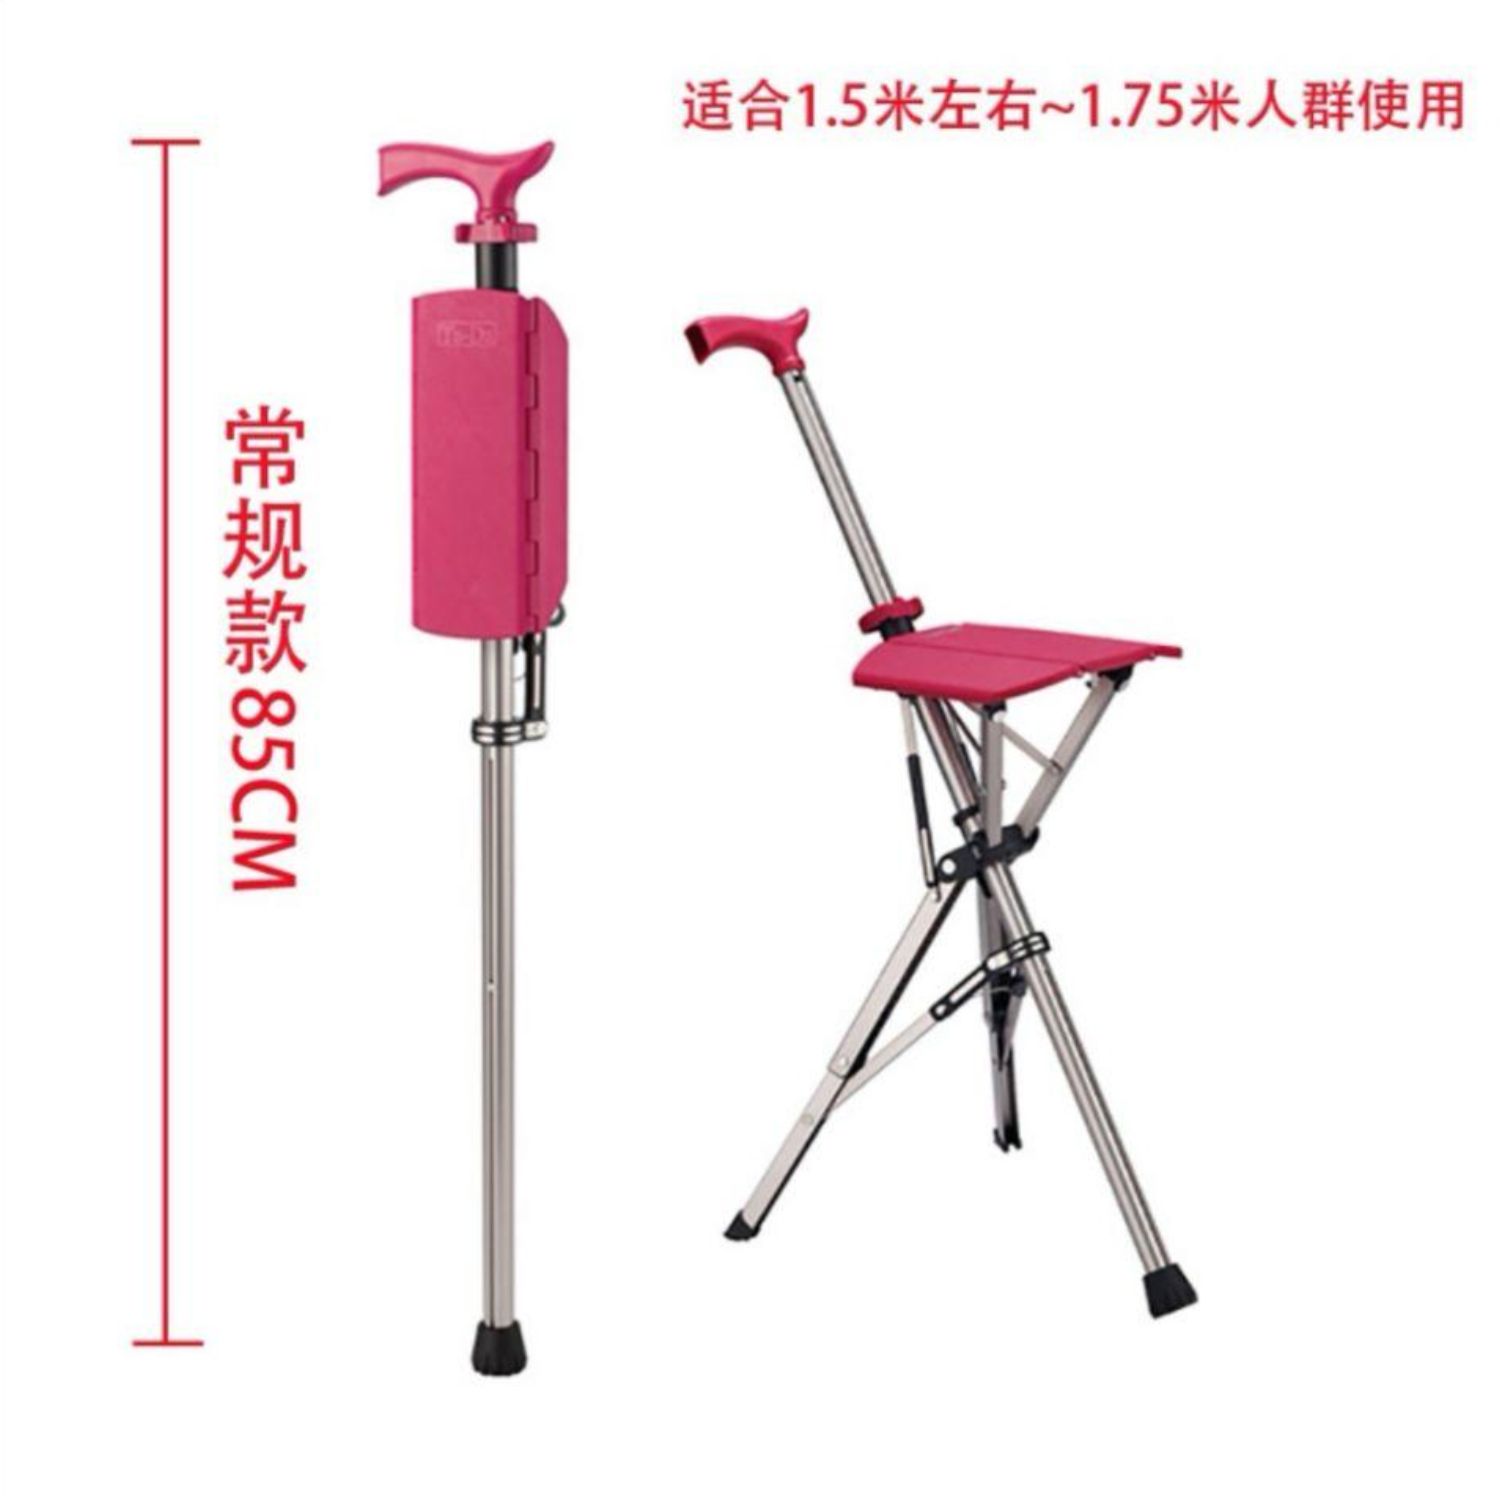 台湾ta-da折叠拐杖椅老年人手杖凳轻便携台达椅可坐防滑拐棍旅游 咖啡